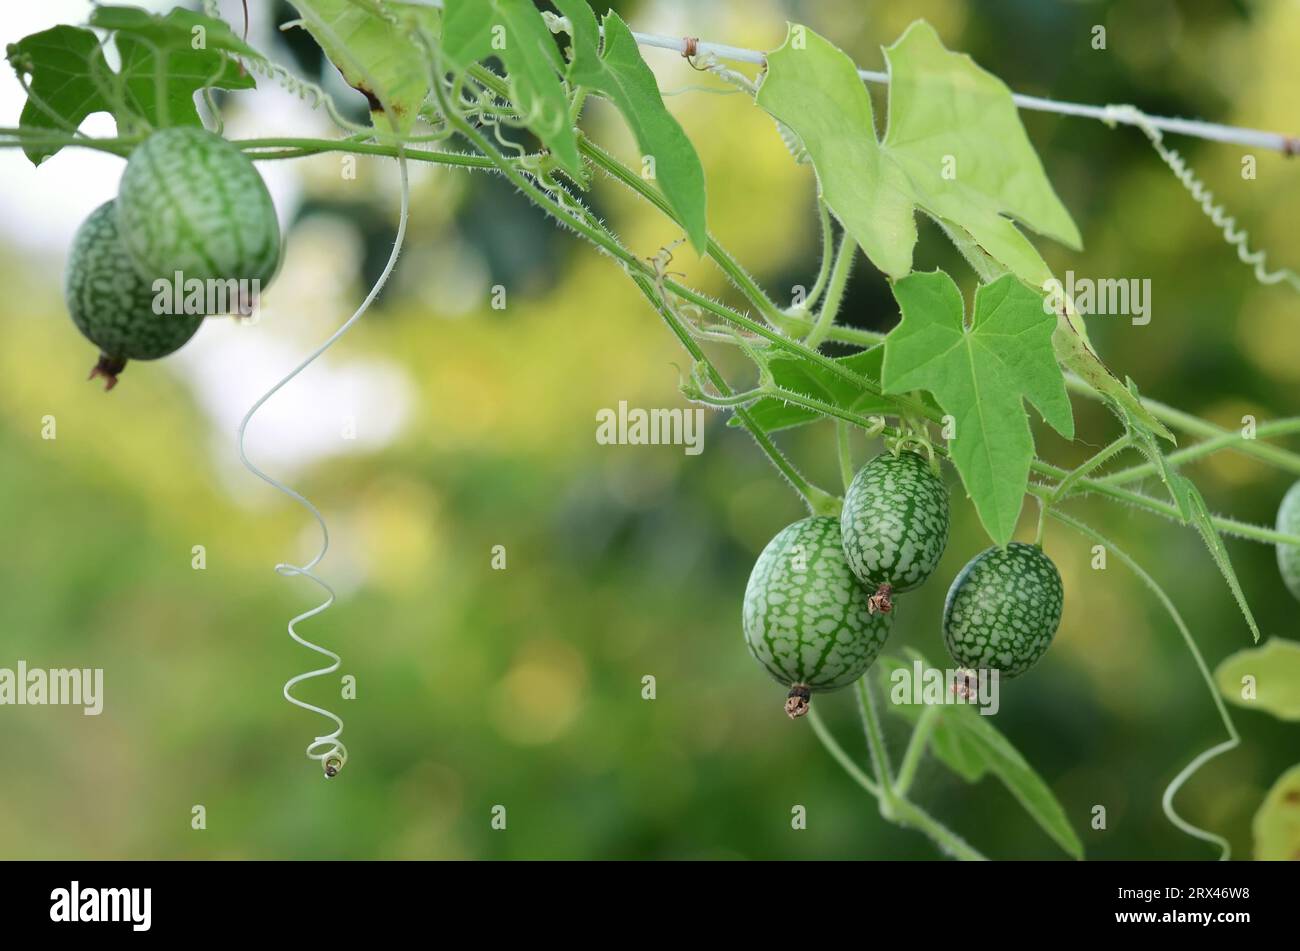 Kleine grüne Früchte von Melothria scabra oder Cucamelon, die auf einer dünnen Liane wachsen. Konzept des Anbaus eigener Bio-Lebensmittel. Stockfoto